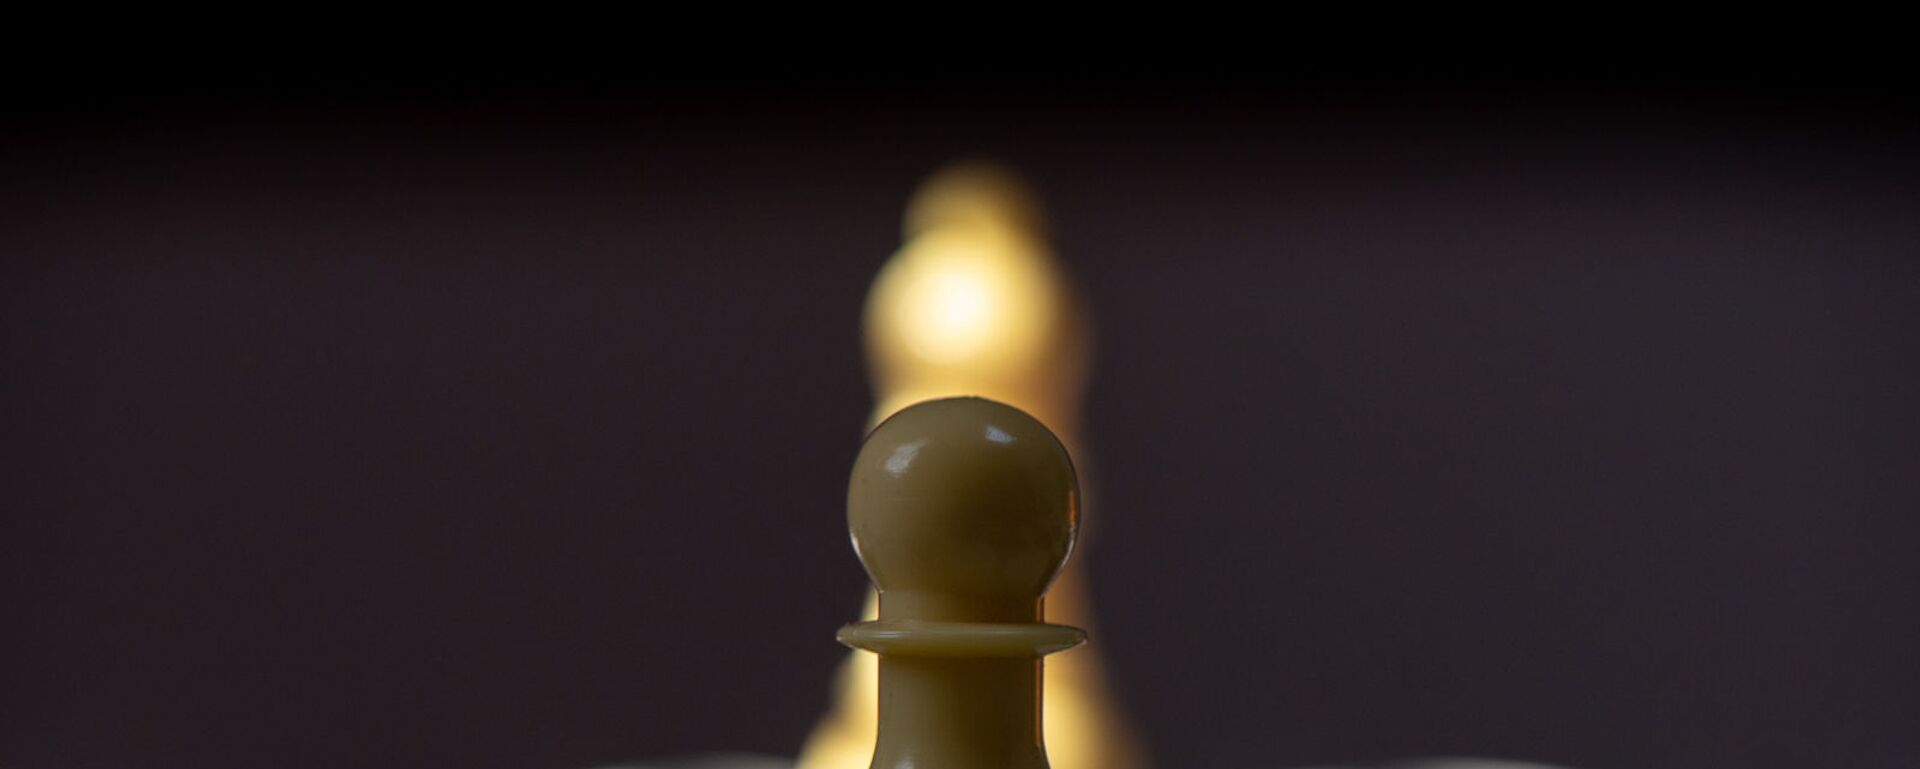 Модернизированные шахматы Джавада Ованнисяна, где каждая пешка имеет свой знак - Sputnik Արմենիա, 1920, 31.08.2021